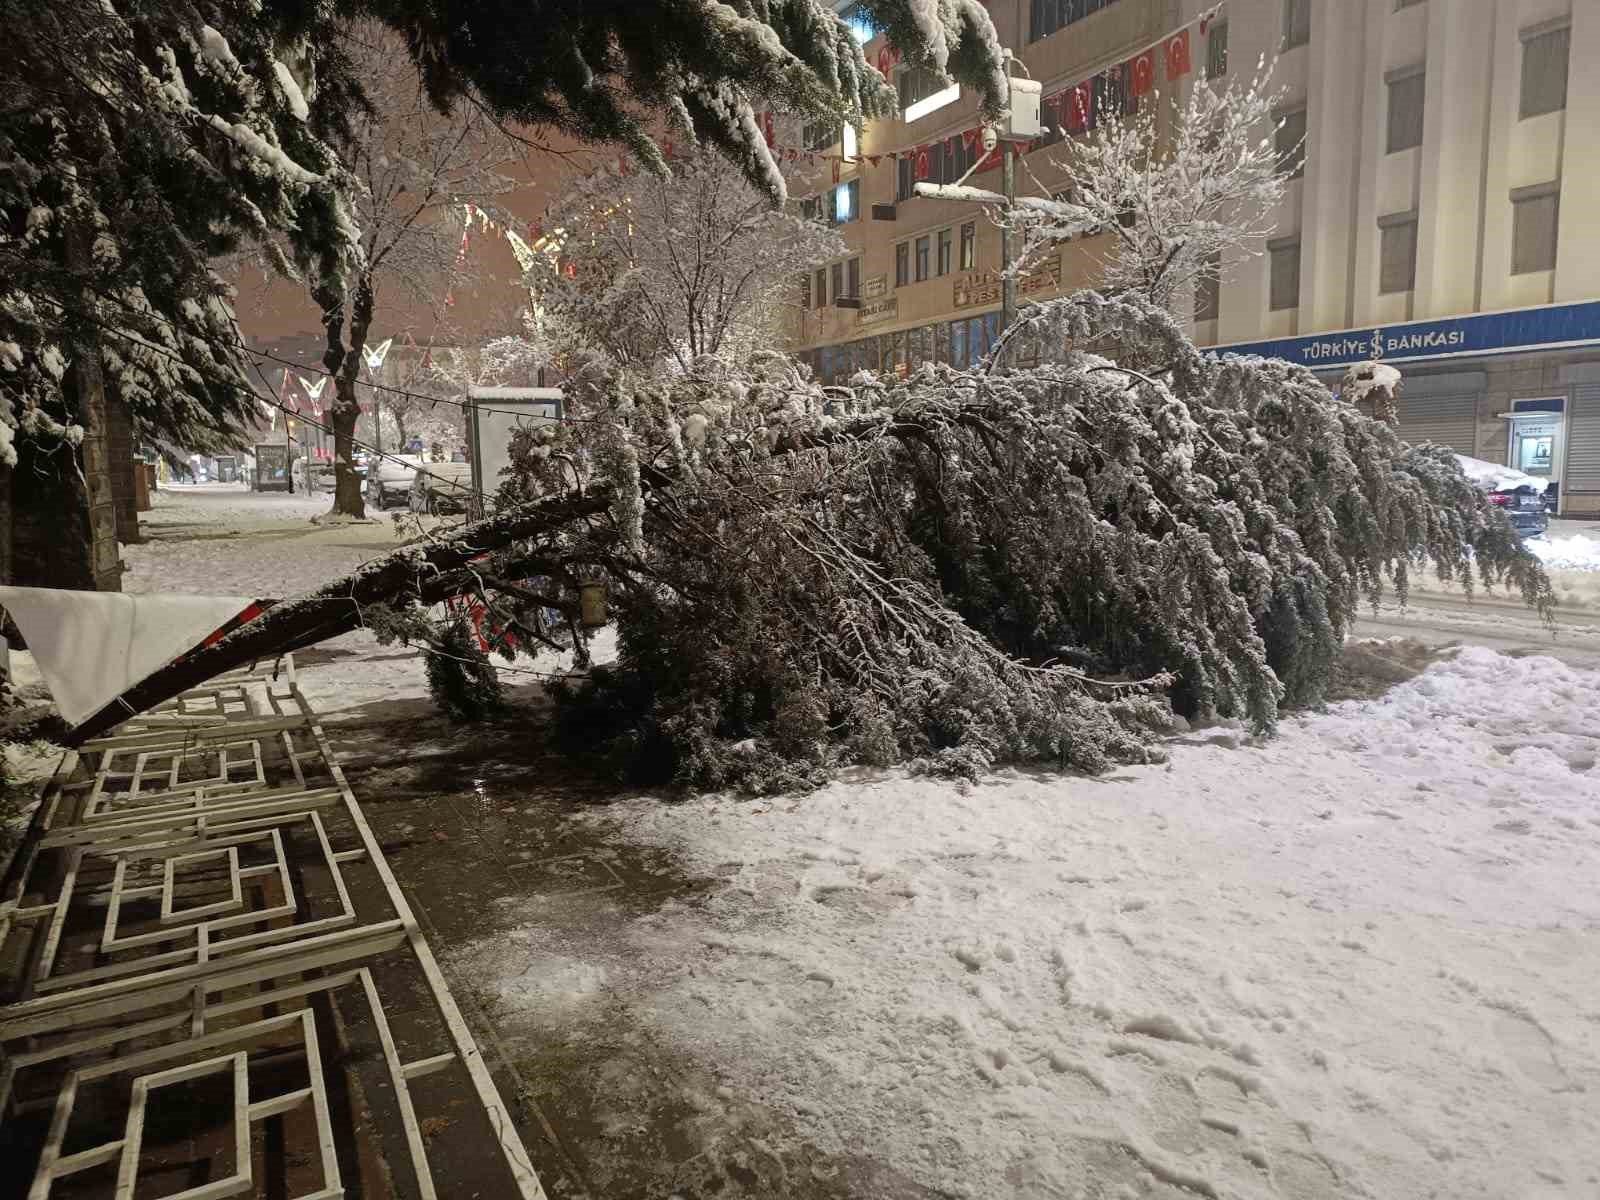 Van’da aşırı kar yağışına dayanamayan ağaç yola devrildi